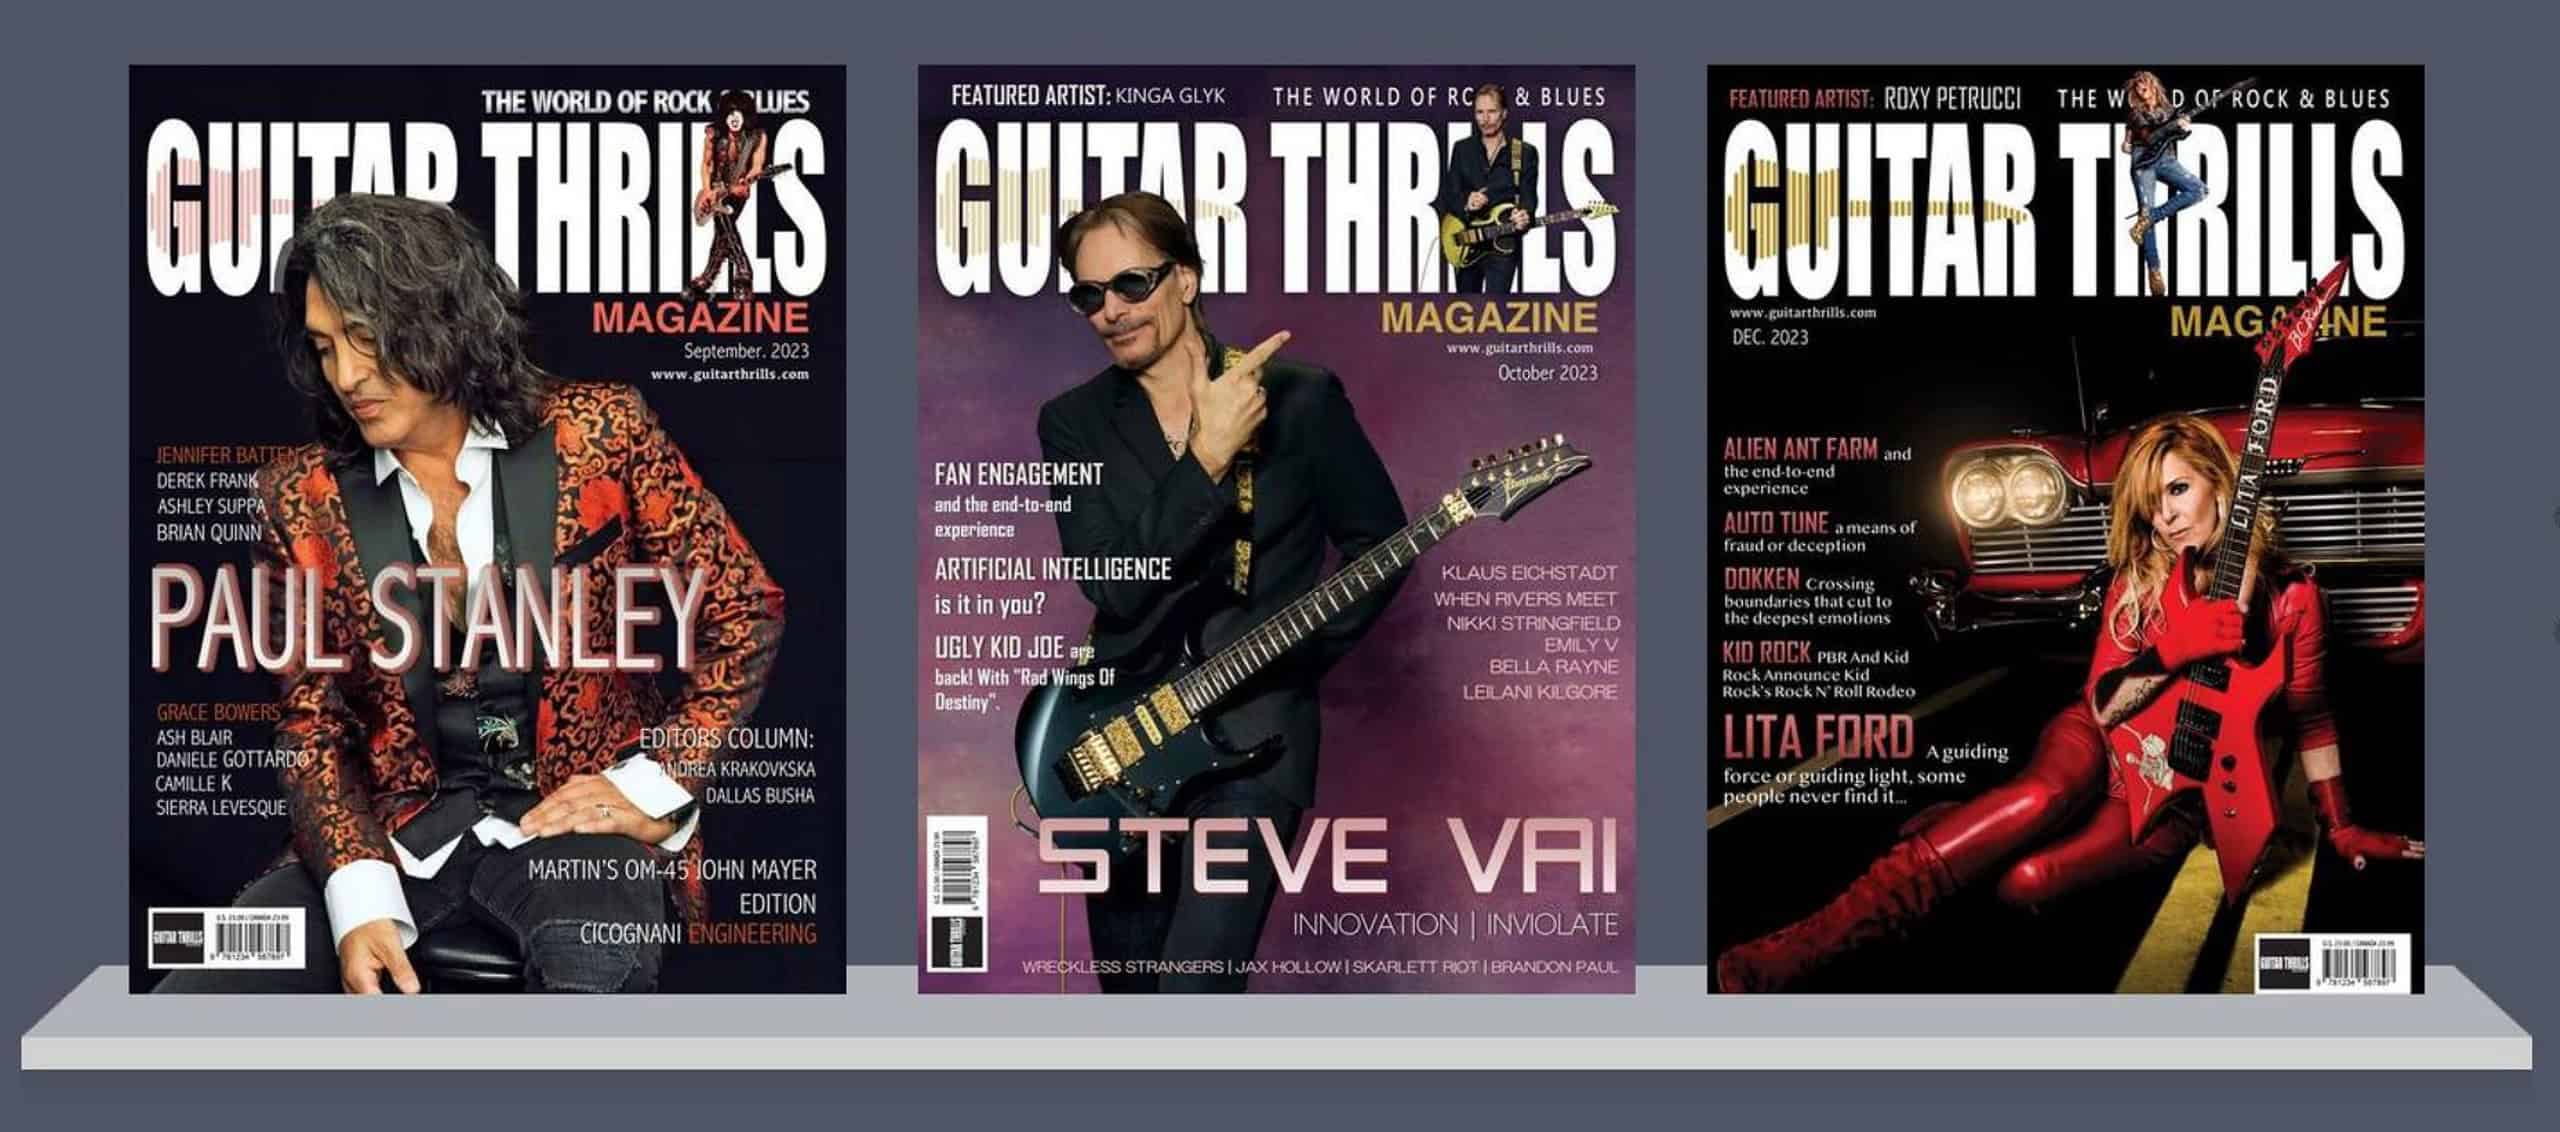 Guitar Thrills Magazine - Covers